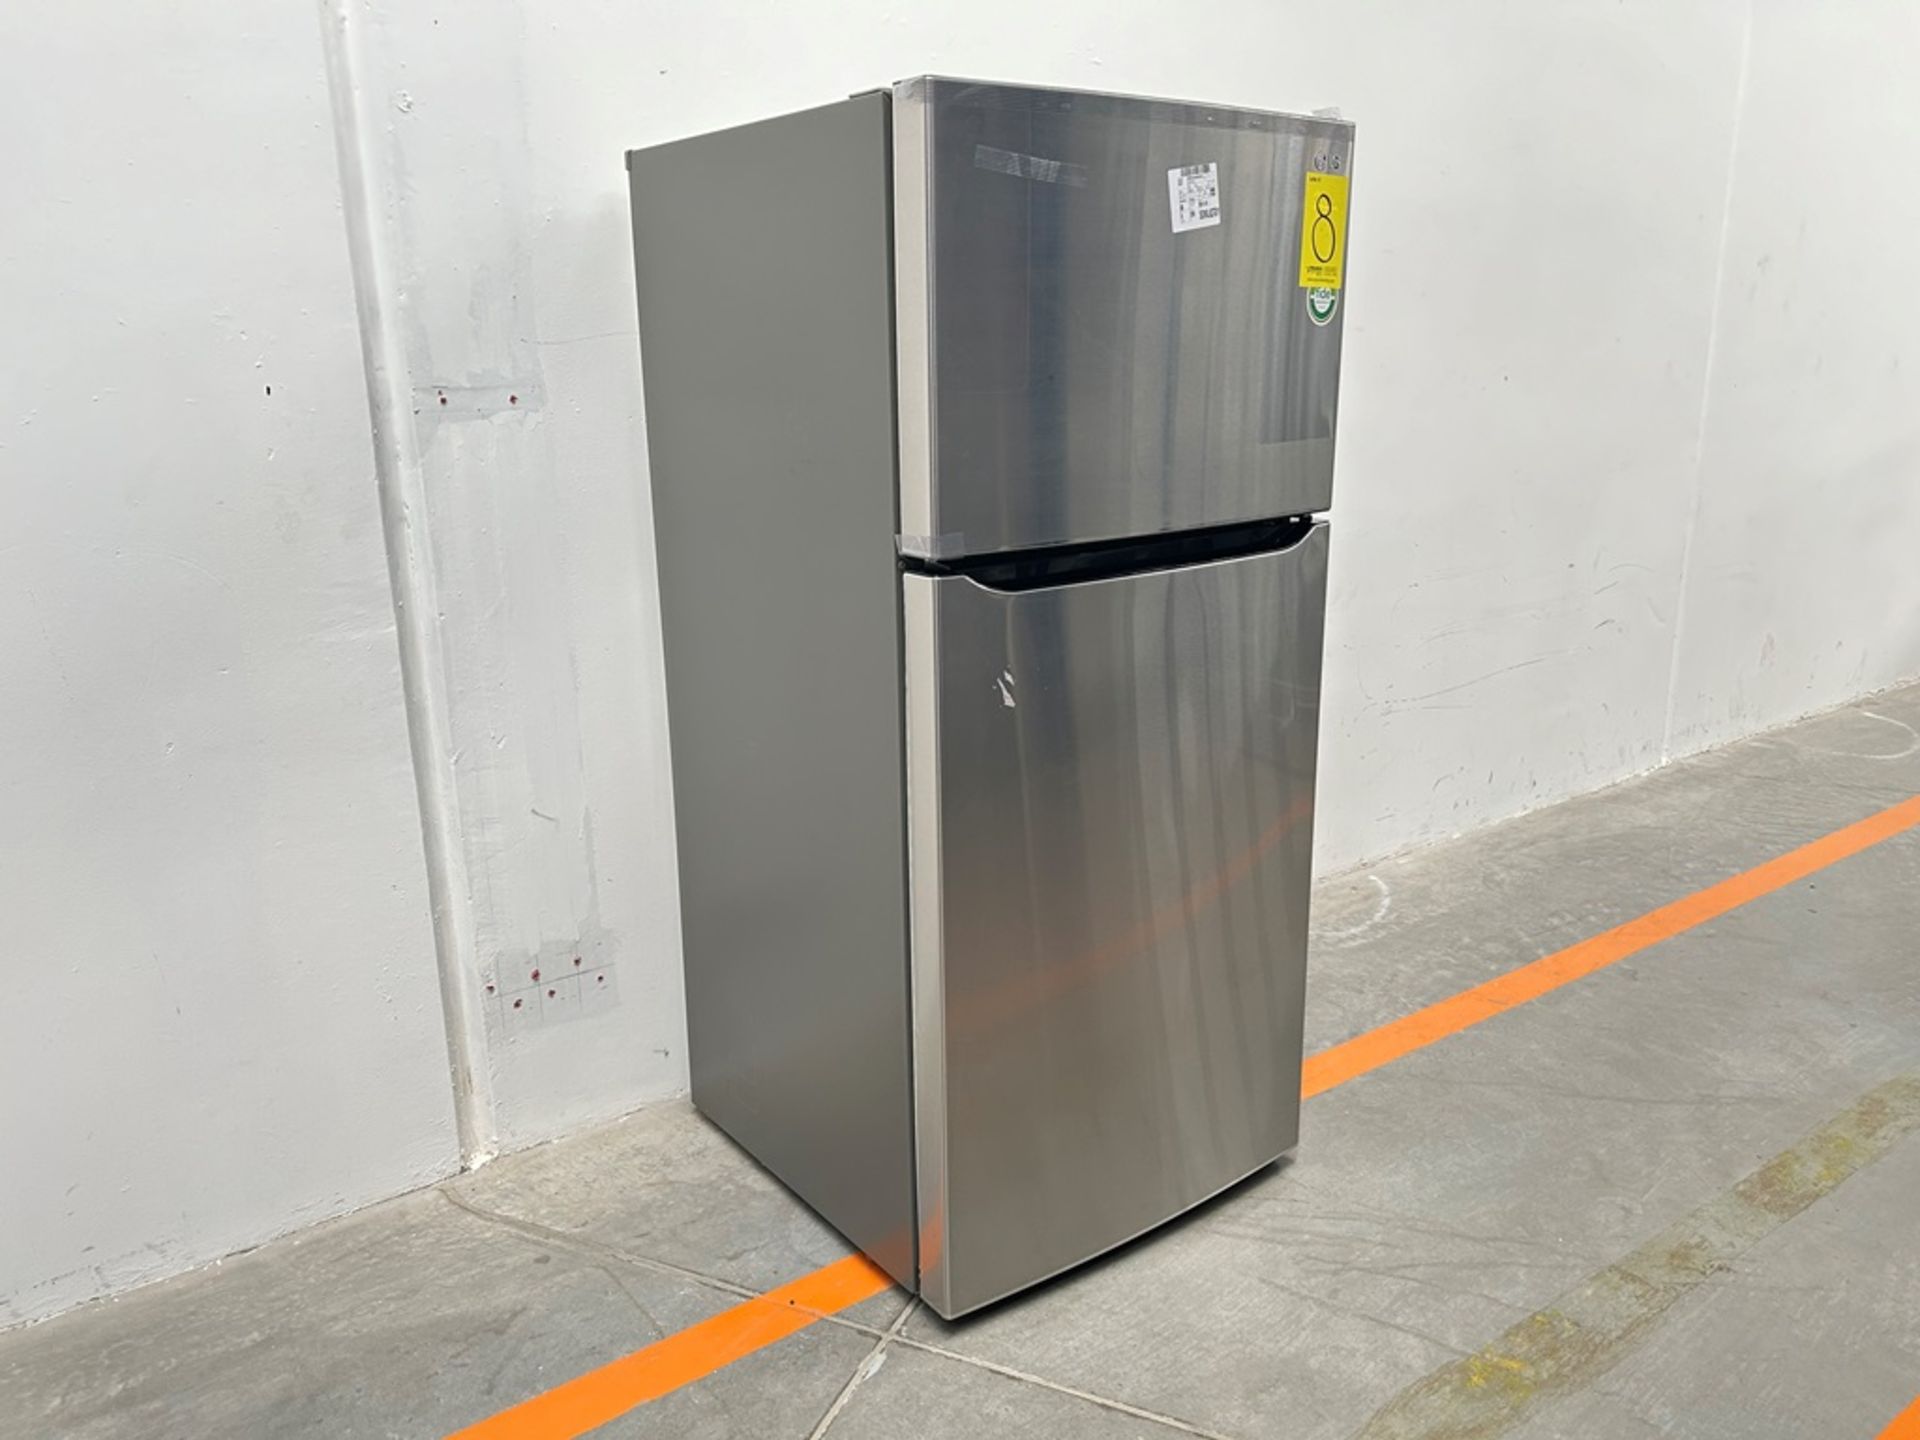 (NUEVO) Refrigerador Marca LG, Modelo LT57BPSX, Serie P2D419, Color GRIS - Image 3 of 11